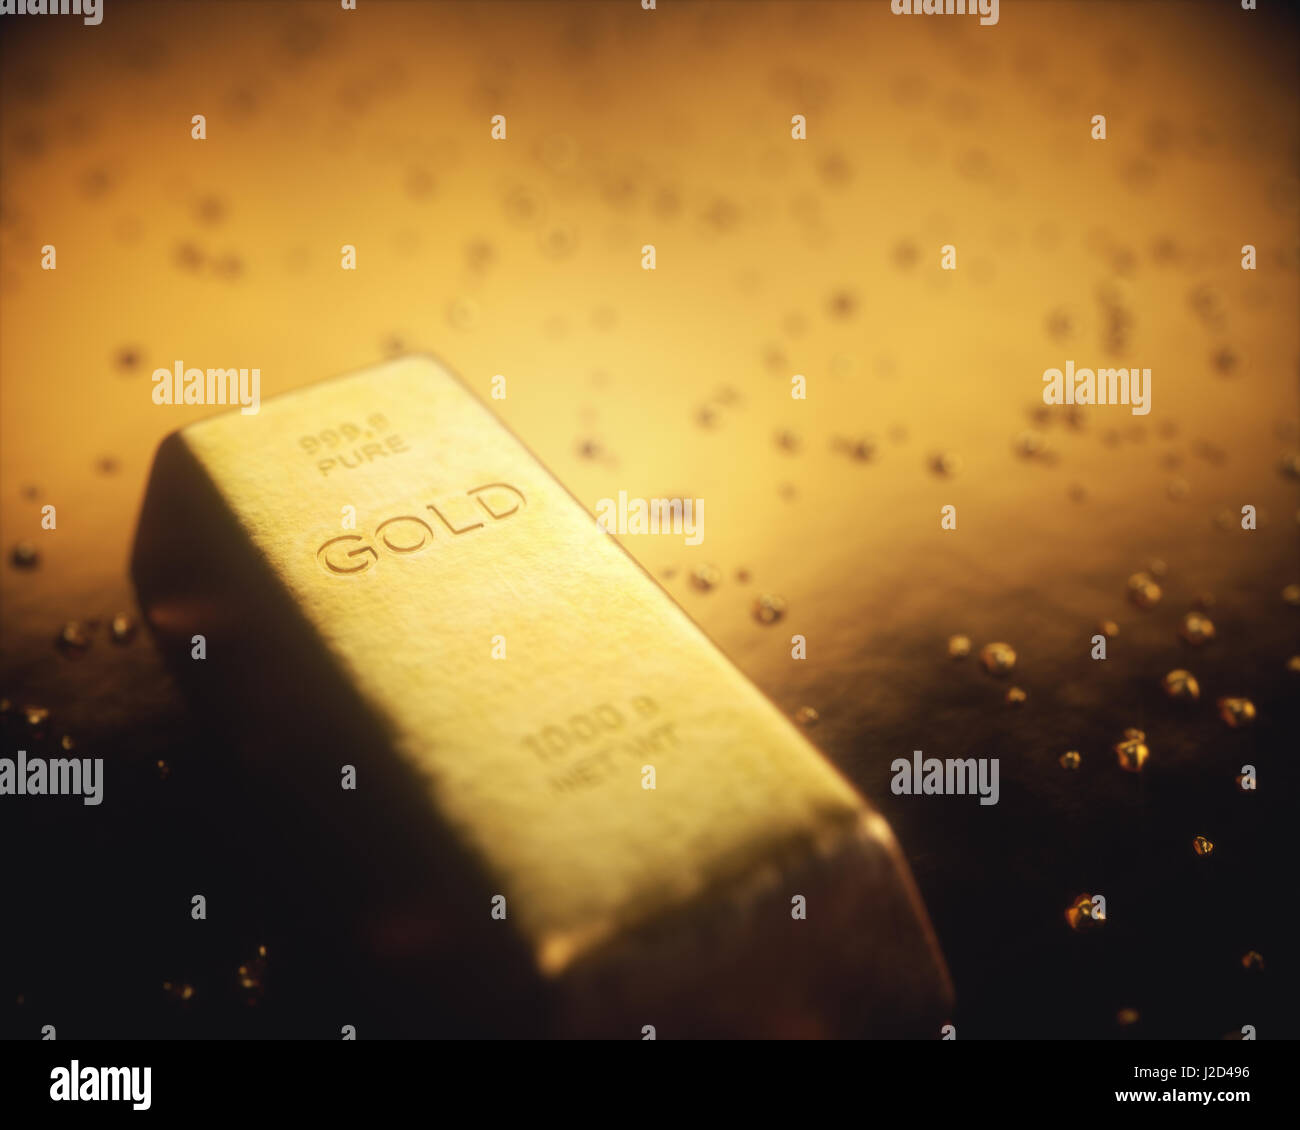 Gold bar 1000 grammi, nel mezzo di pepite d'oro. Esplorazione dell'oro e il concetto di data mining. Foto Stock